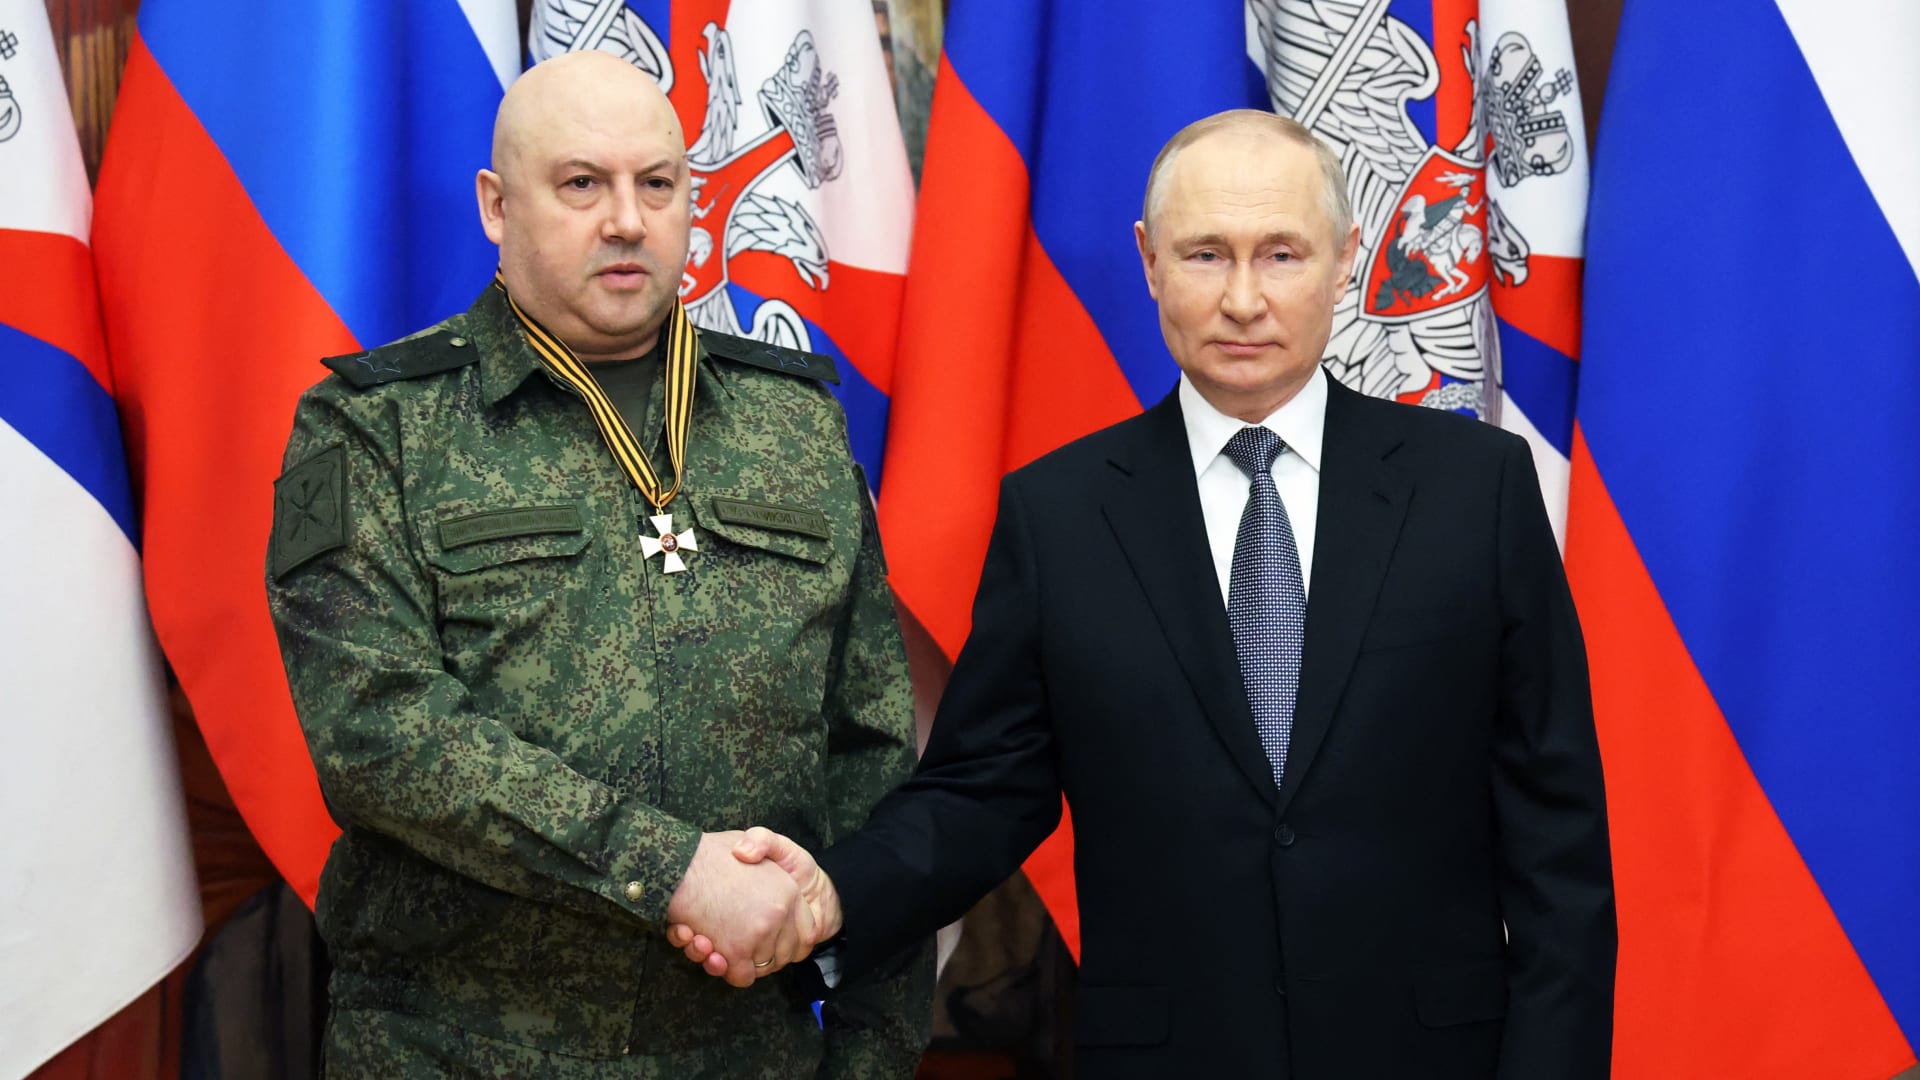 يتمتع بتاريخ من الوحشية.. نظرة على سيرغي سوروفيكين قائد الحرب الجديد لبوتين في أوكرانيا